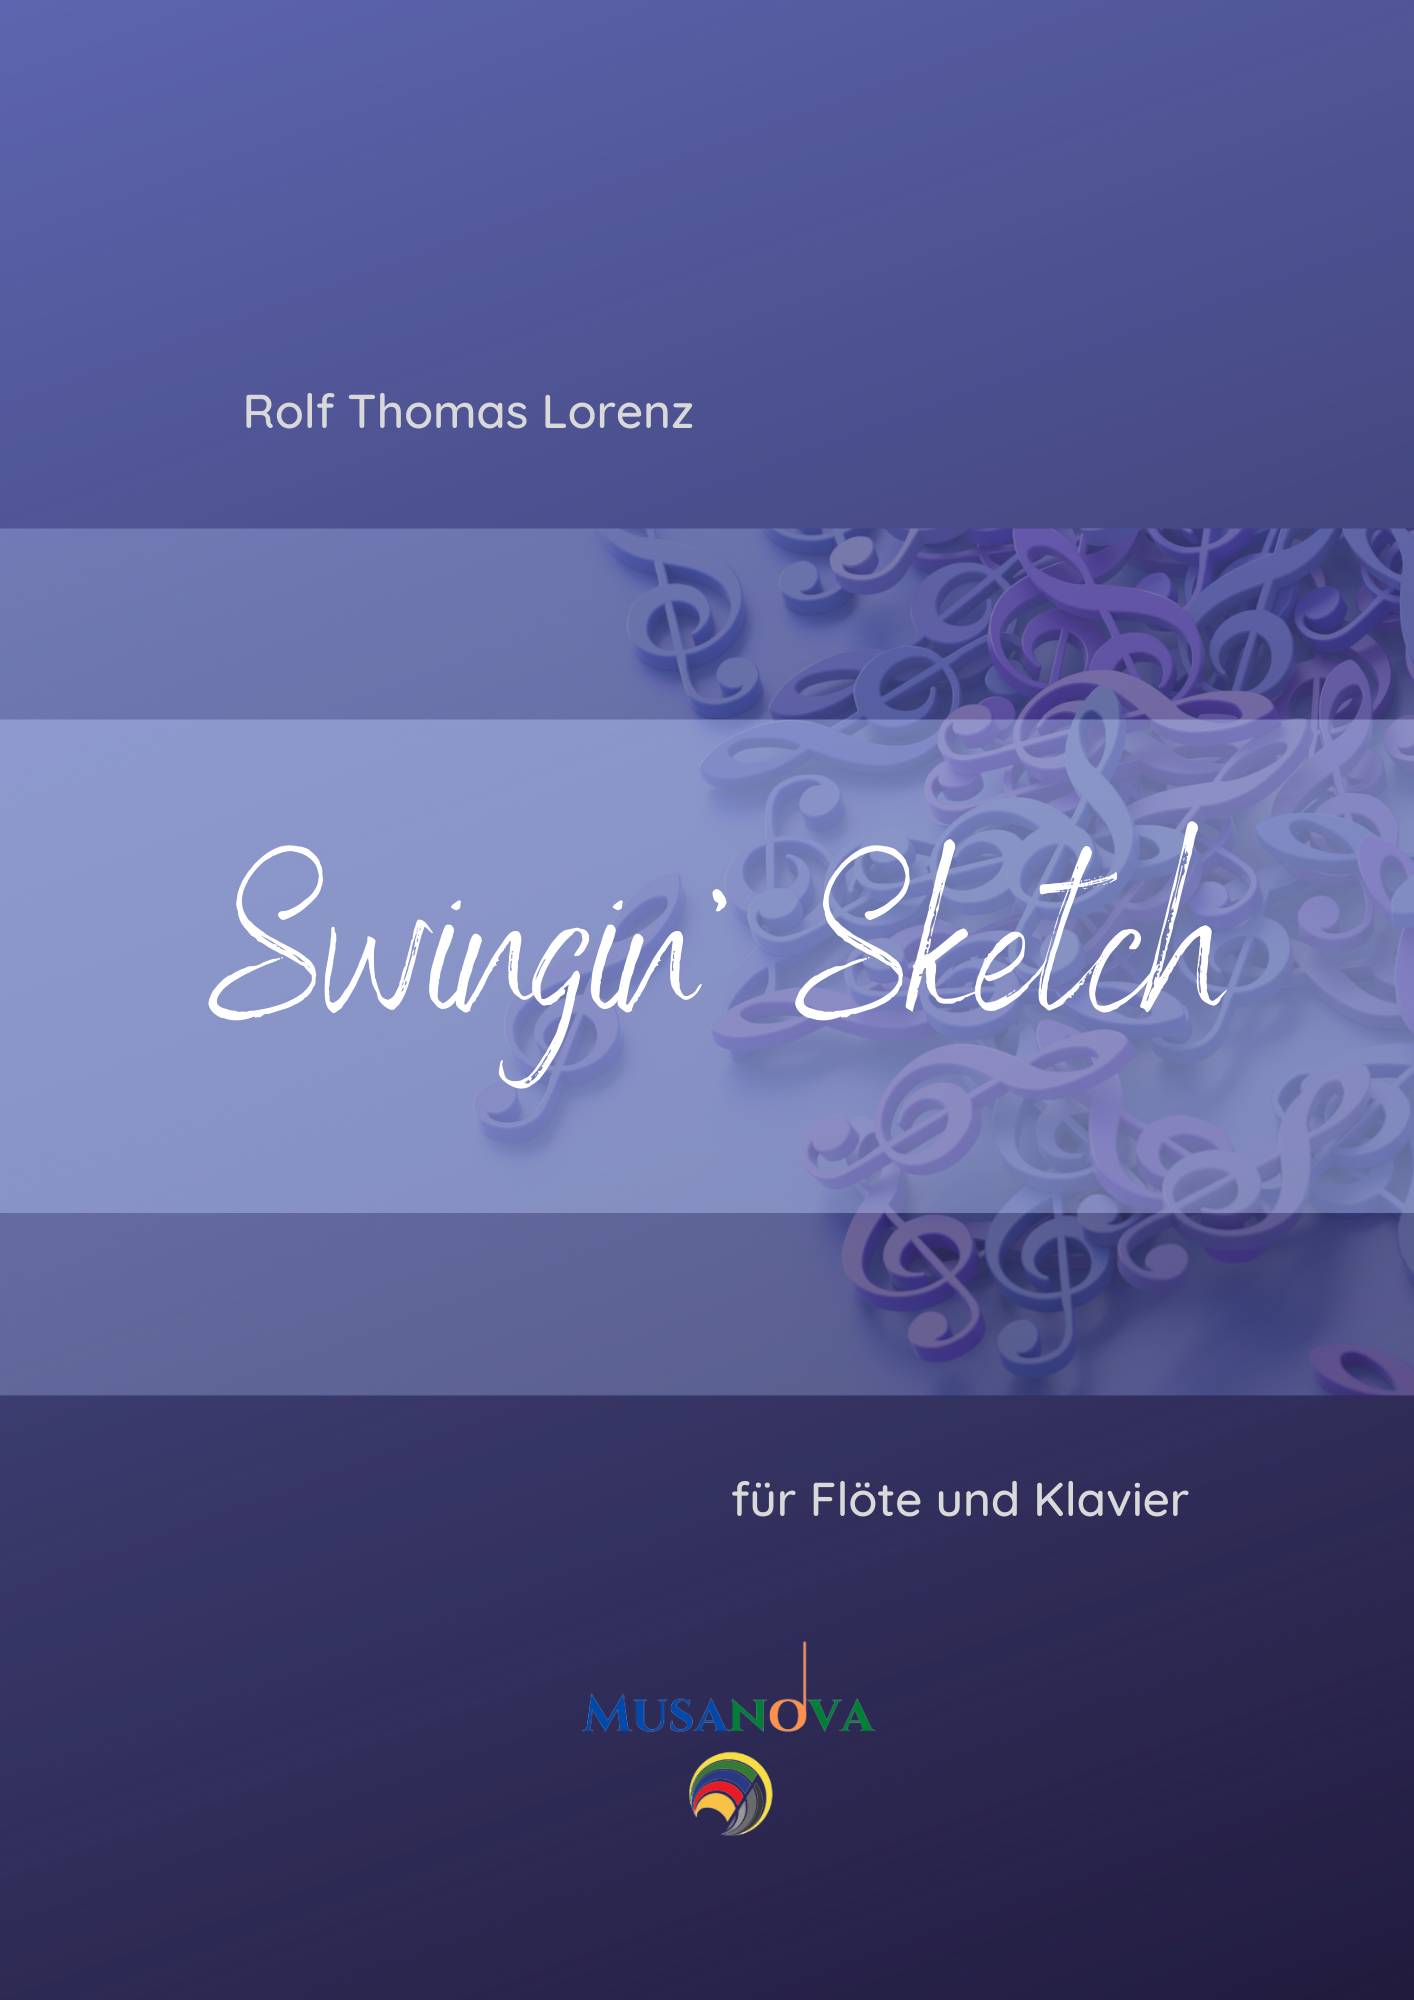 SWINGIN' SKETCH für Flöte und Klavier